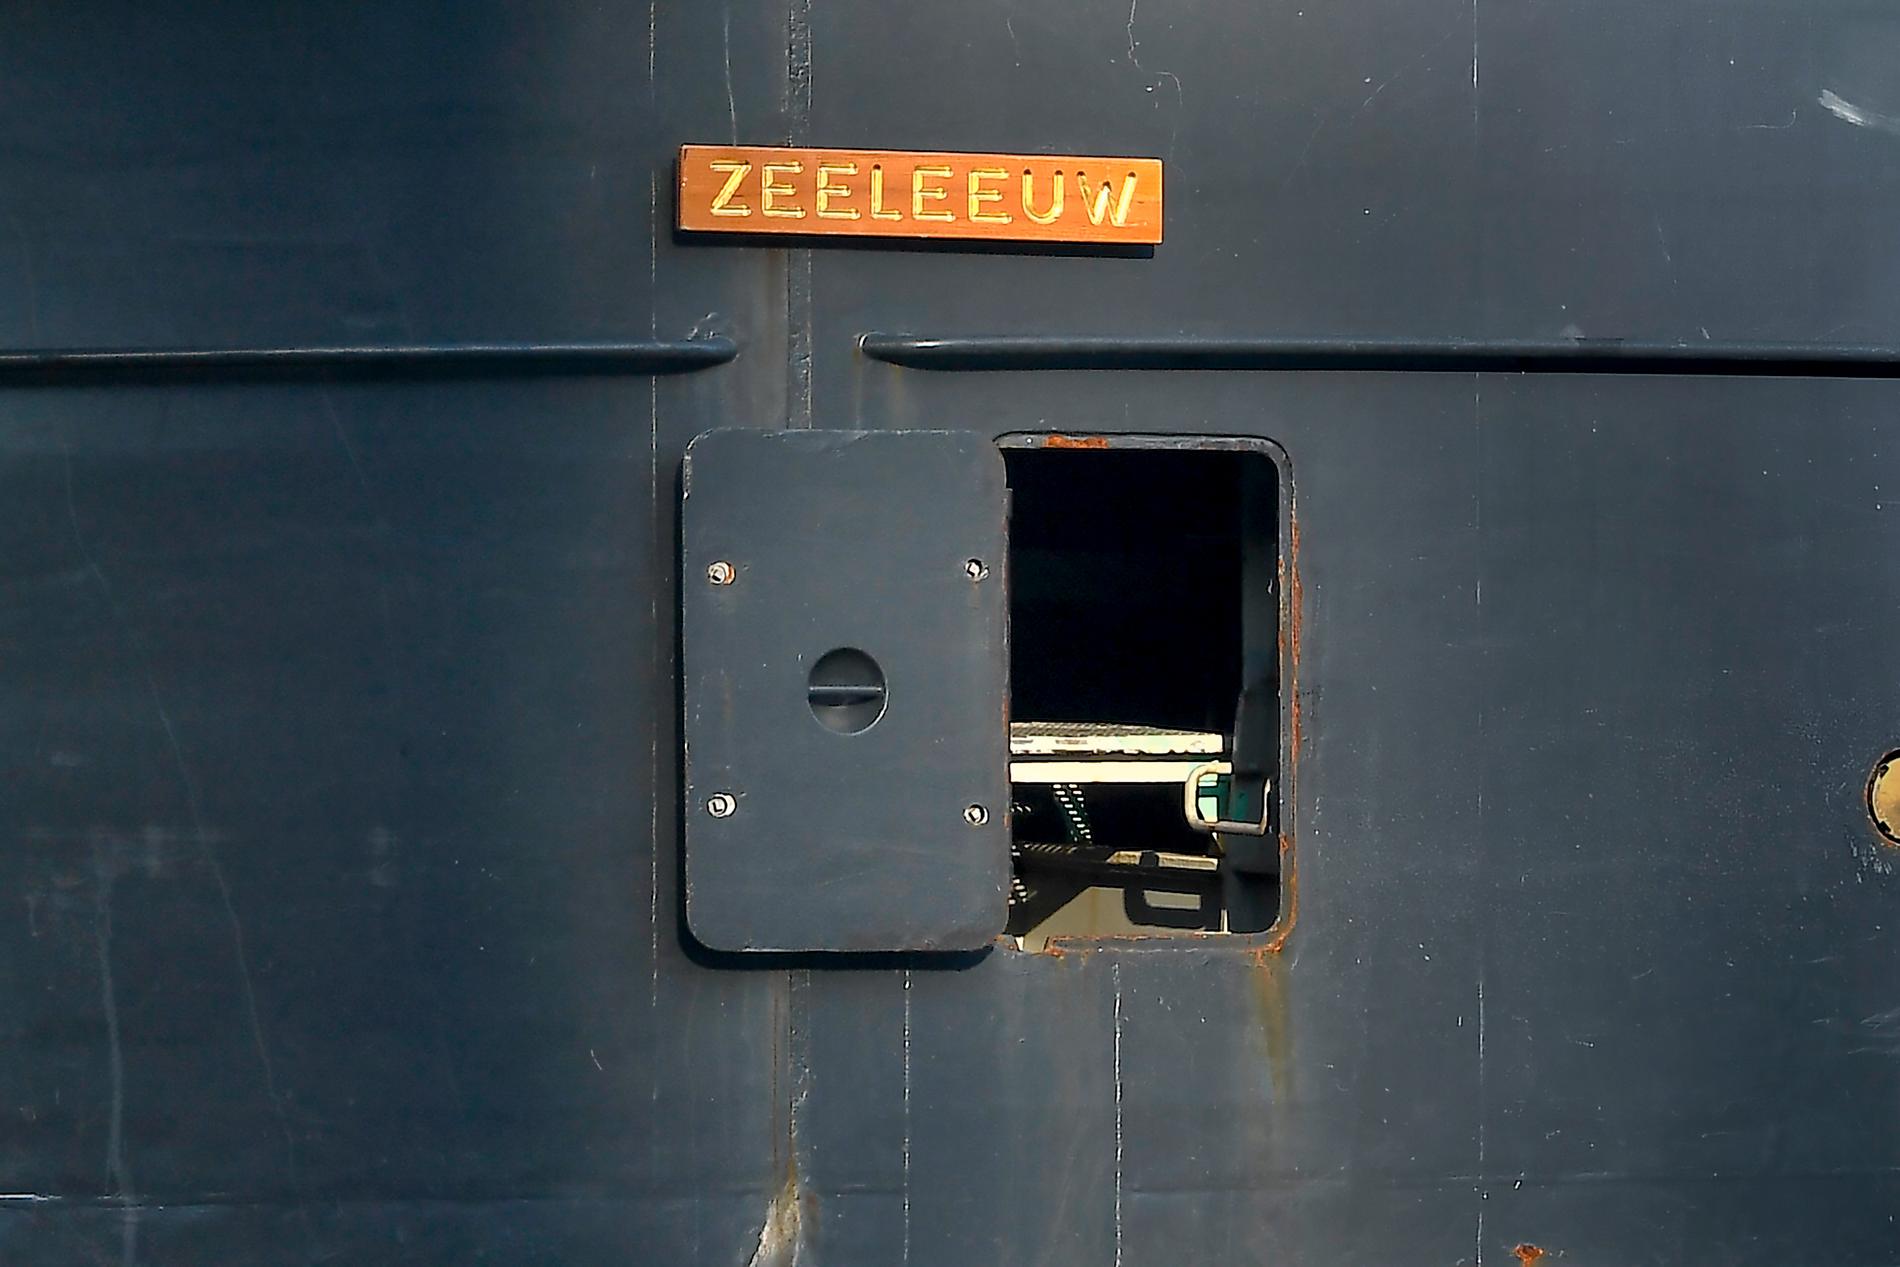 Bland skärgårdsbåtar och Djurgårdsfärjor gled den nederländska HNLMS Zeeleeuw in och lade sig intill kaj vid Fotografiska i Stockholm.